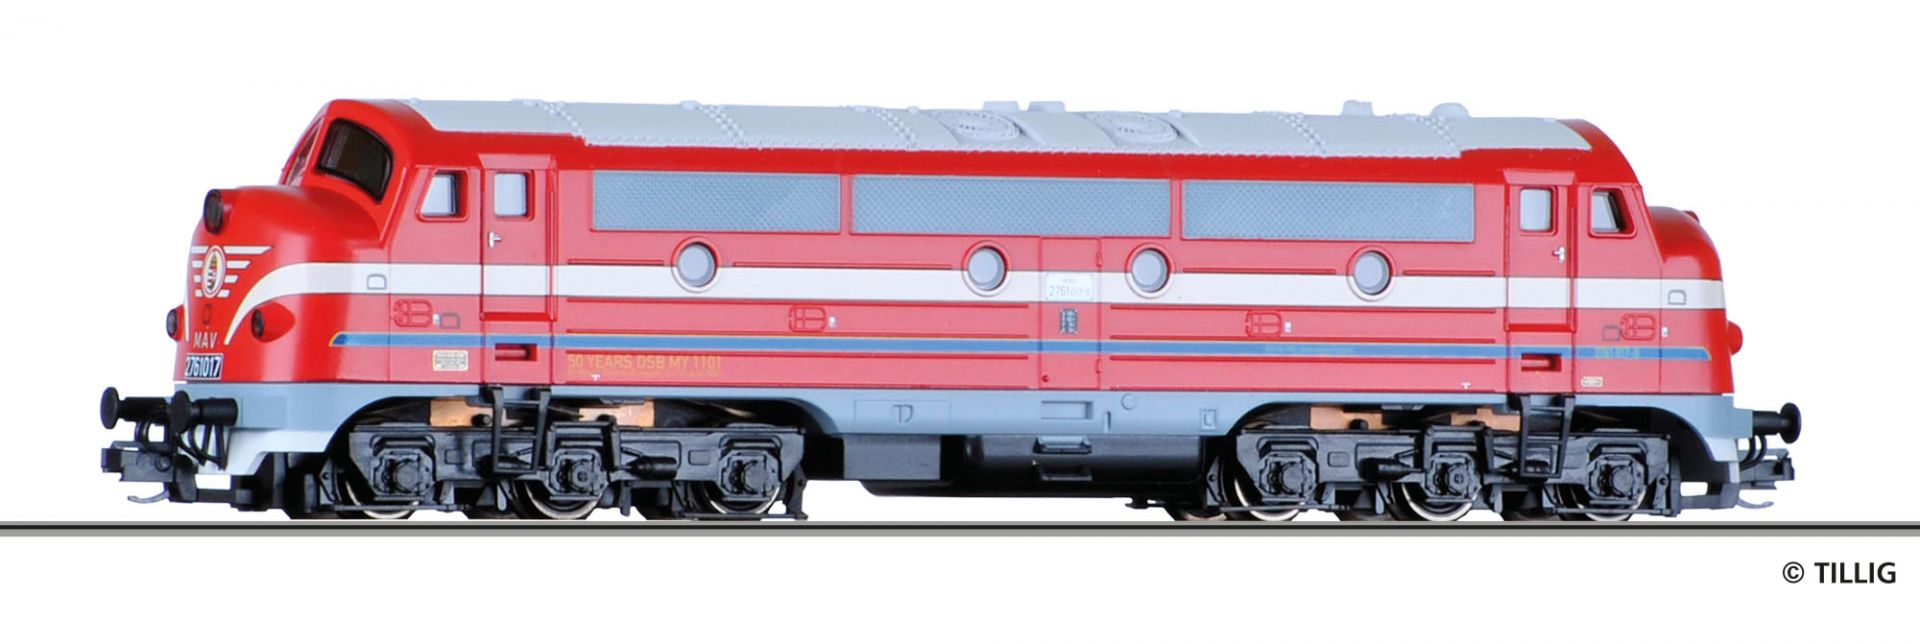 04541 | Diesellokomotive MAV -werksseitig ausverkauft-